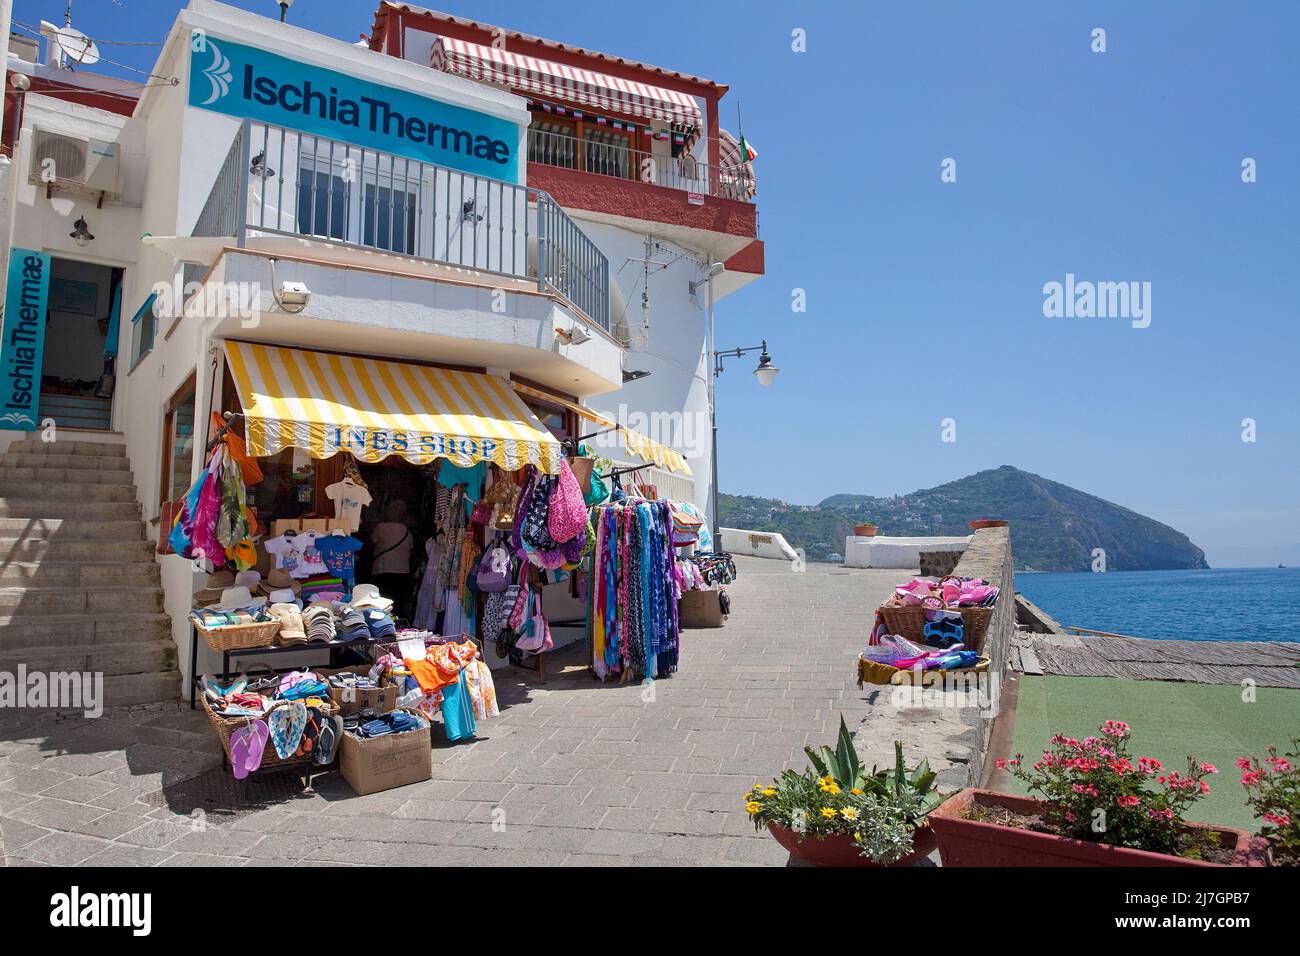 Souvenirshop im malerischen Fischerdorf Sant' Angelo, Insel Ischia, Golf von Neapel, Italien, Mittelmeer, Europa Stockfoto